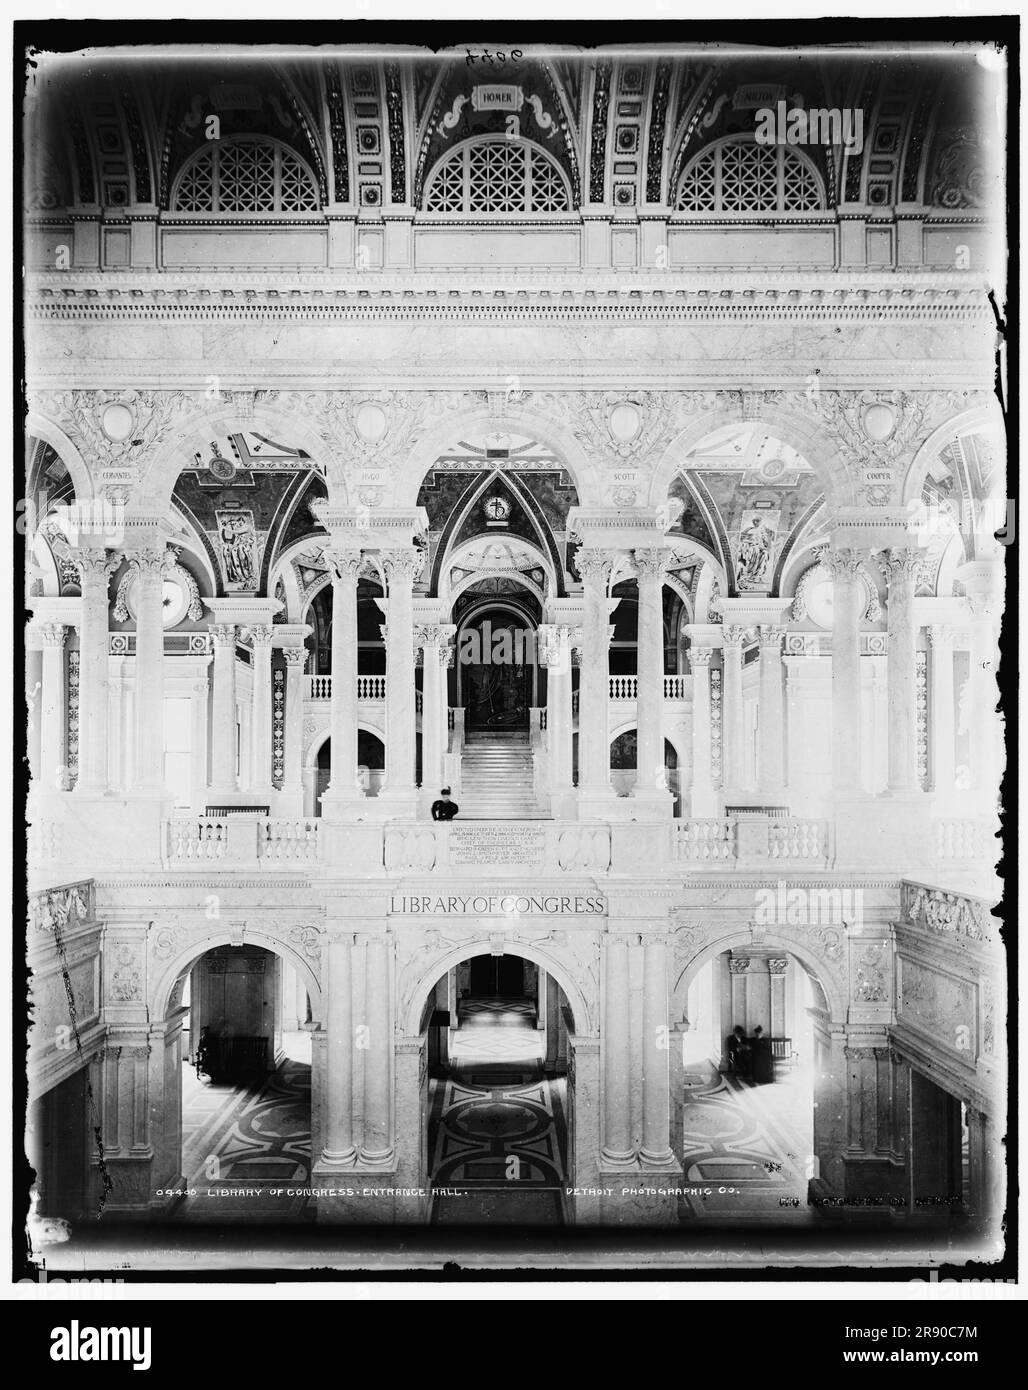 Bibliothek der Kongresseingangshalle, zwischen 1889 und 1897. Stockfoto